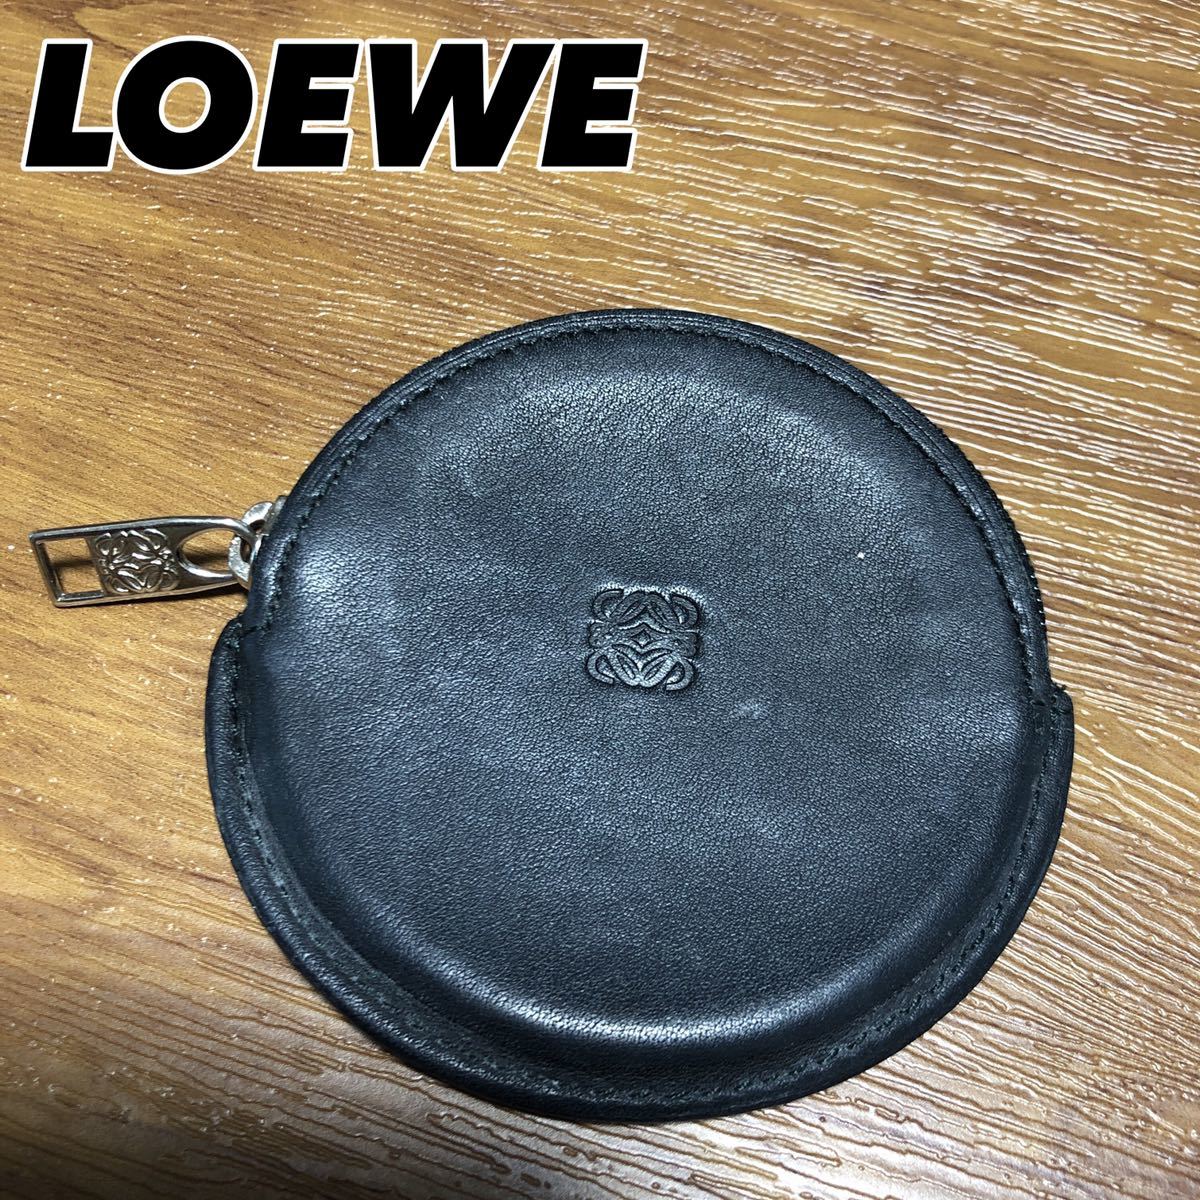 LOEWE ロエベ アナグラム レザー コインケース 小銭入れ 丸型 ラウンド 